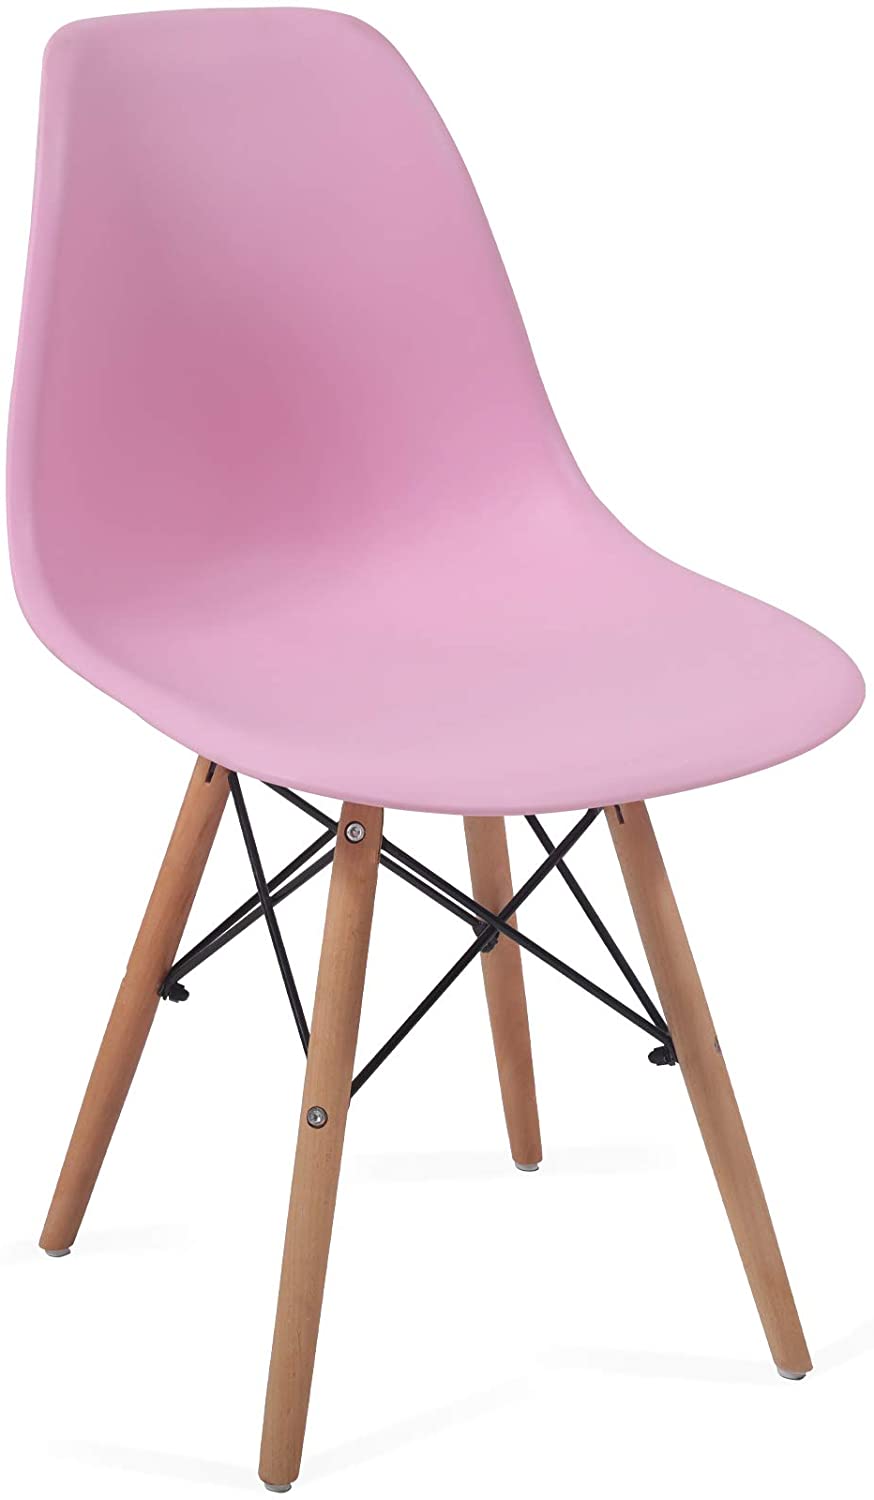 Eetkamerstoelen – Lounge stoelen – Scandinavische stijl – Retro – Vintage – Plastic – Set van 4 – Roze